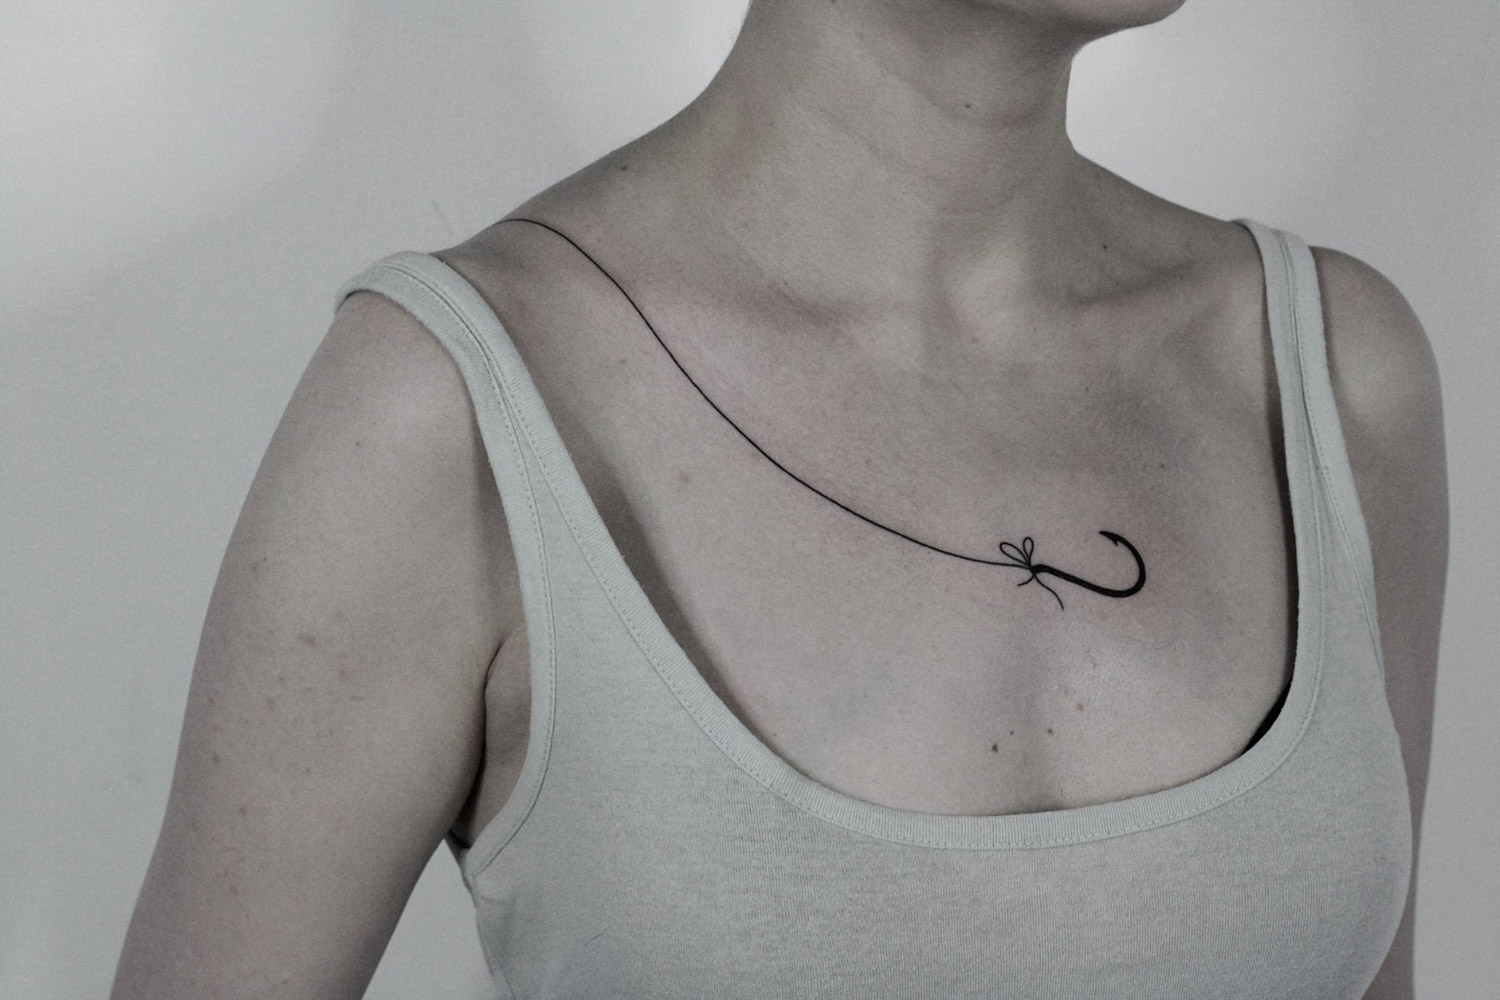 Hook tattoo across skin by ilya brezinski